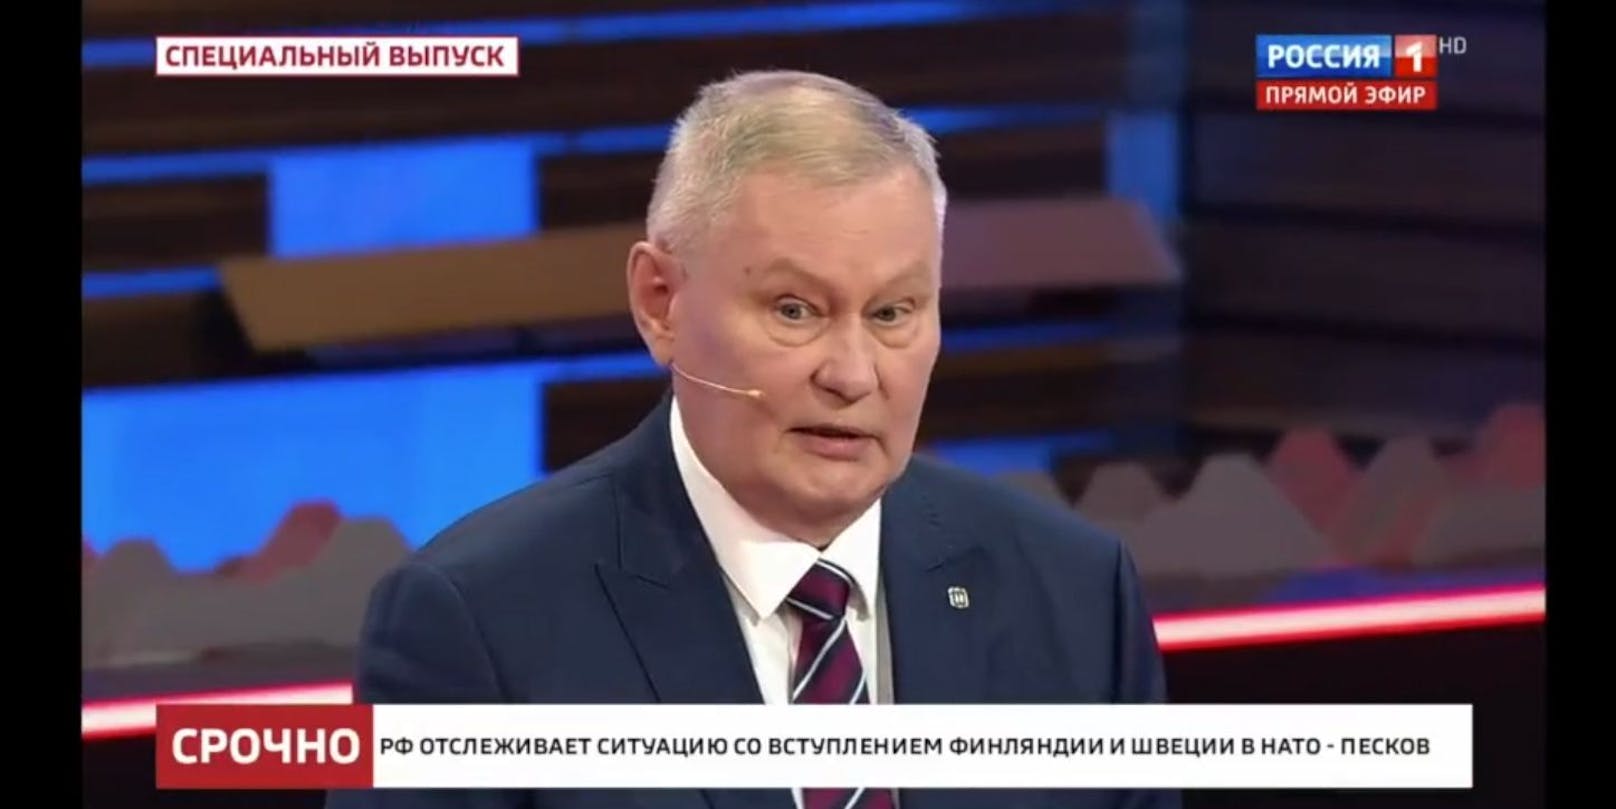 Der frühere Generalstabsoffizier und Militäranalyst Michail Chodarenok fand live im Russen-TV harte Worte zum Angriff auf die Ukraine.